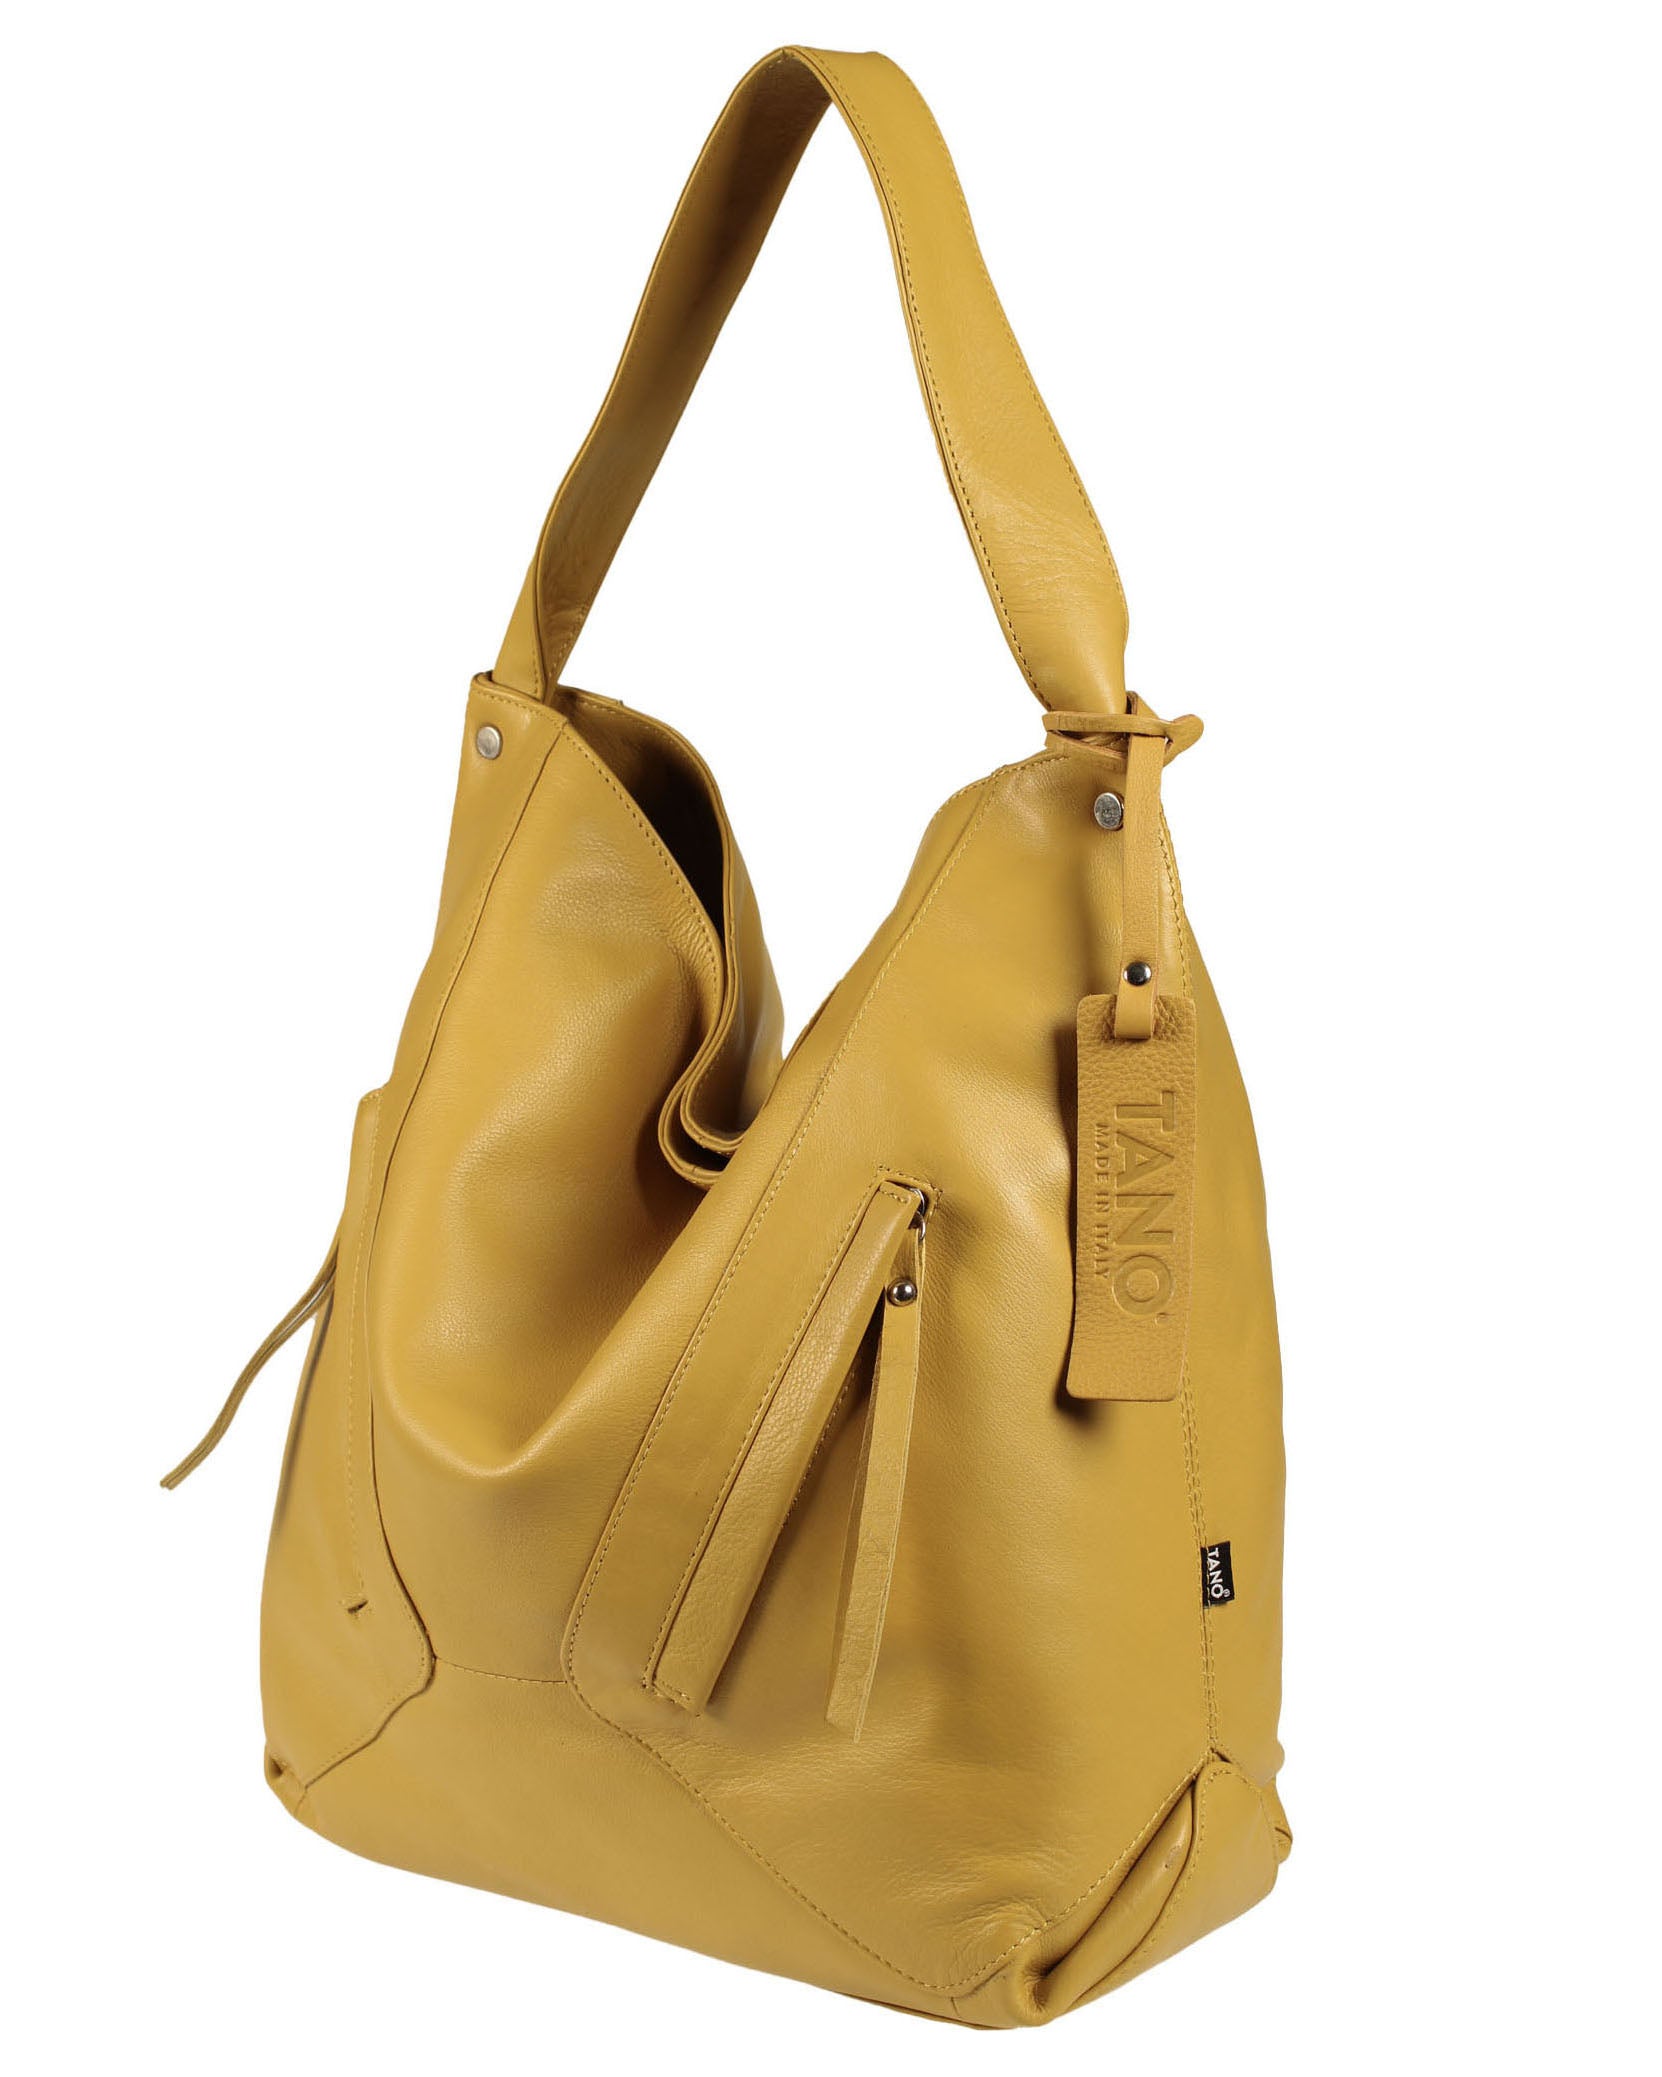 Tano International Handbag | Tano bags, Handbag, Brown leather hobo